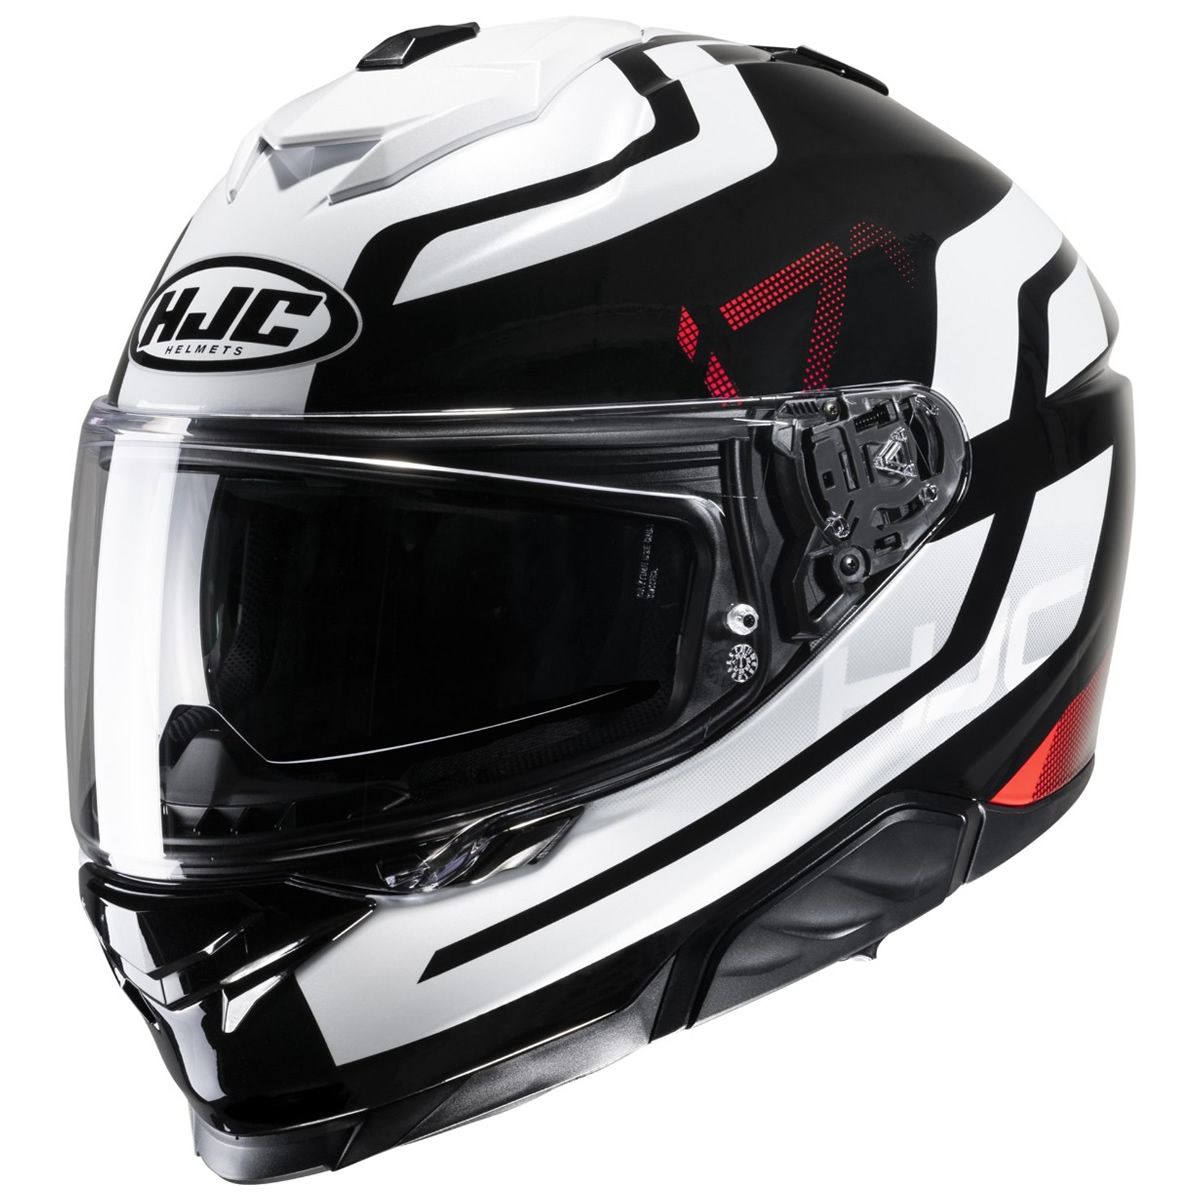 HJC Helm i71 Enta, weiß-schwarz-rot